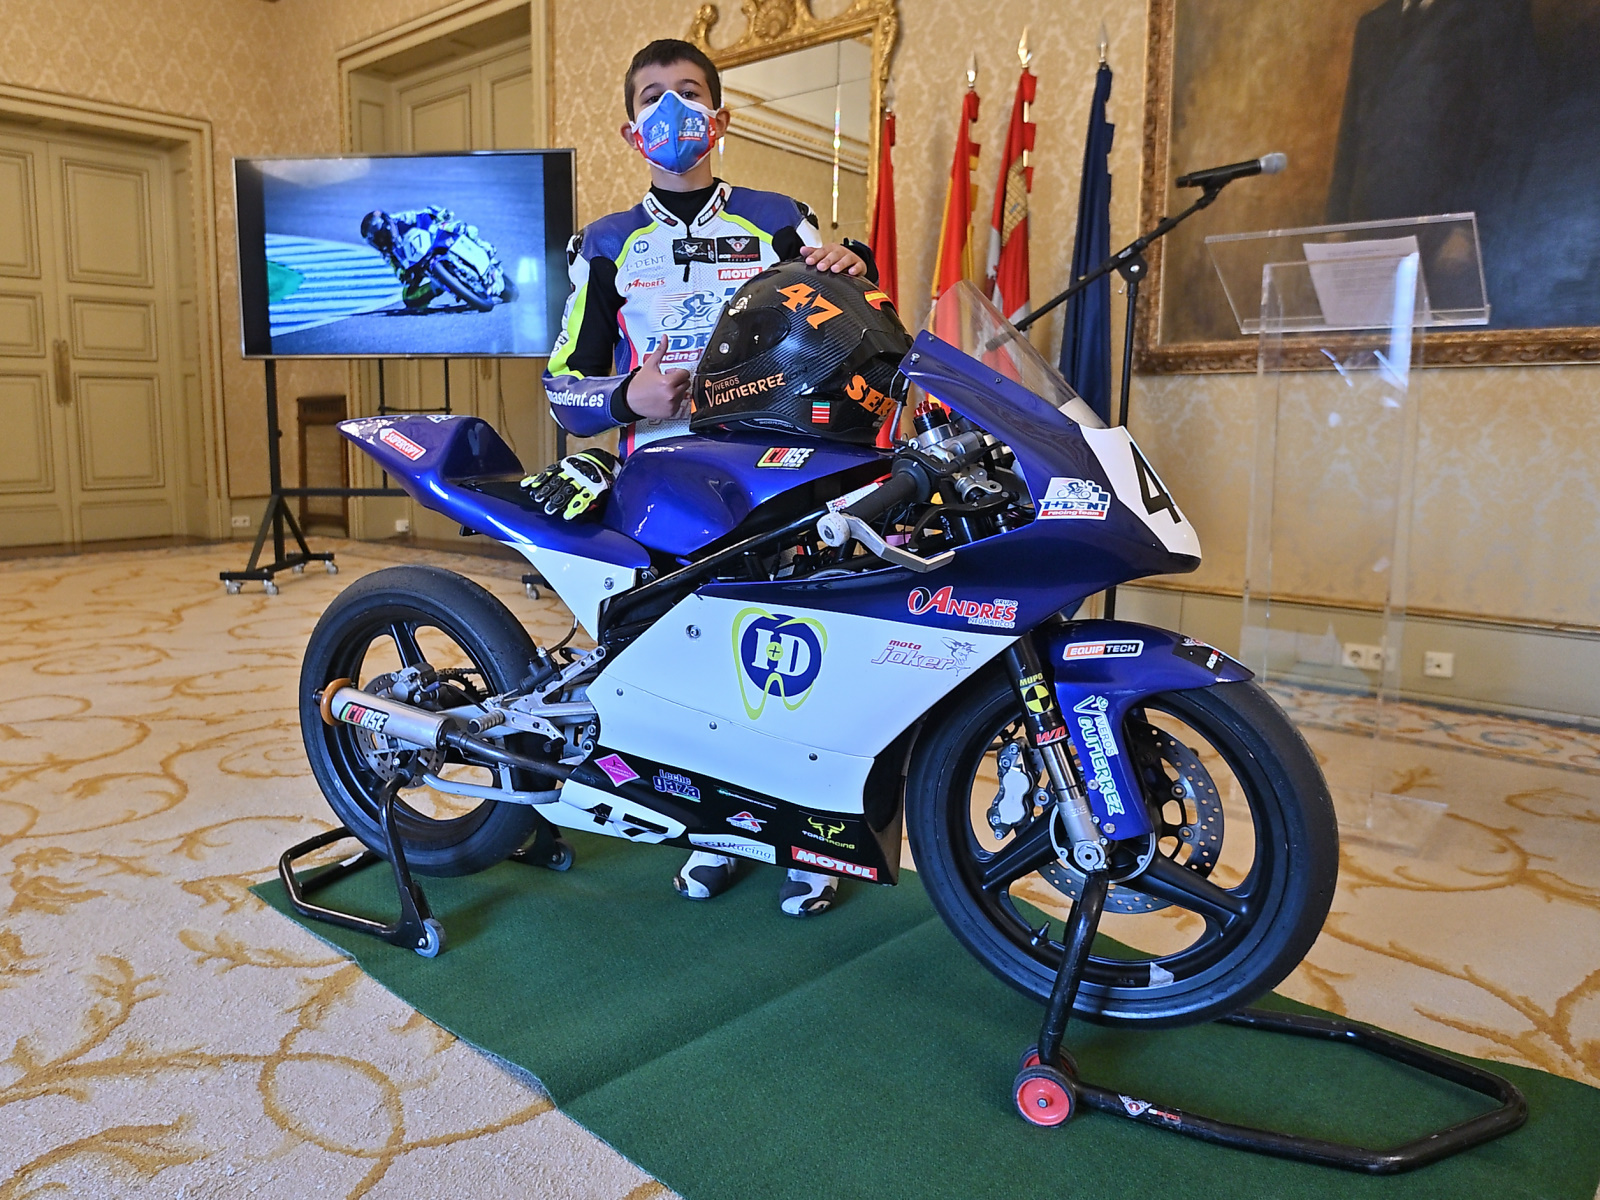 Foto 2 - El alcalde destaca el talento del piloto de motos Sergio Verdugo y le desea éxitos en su...